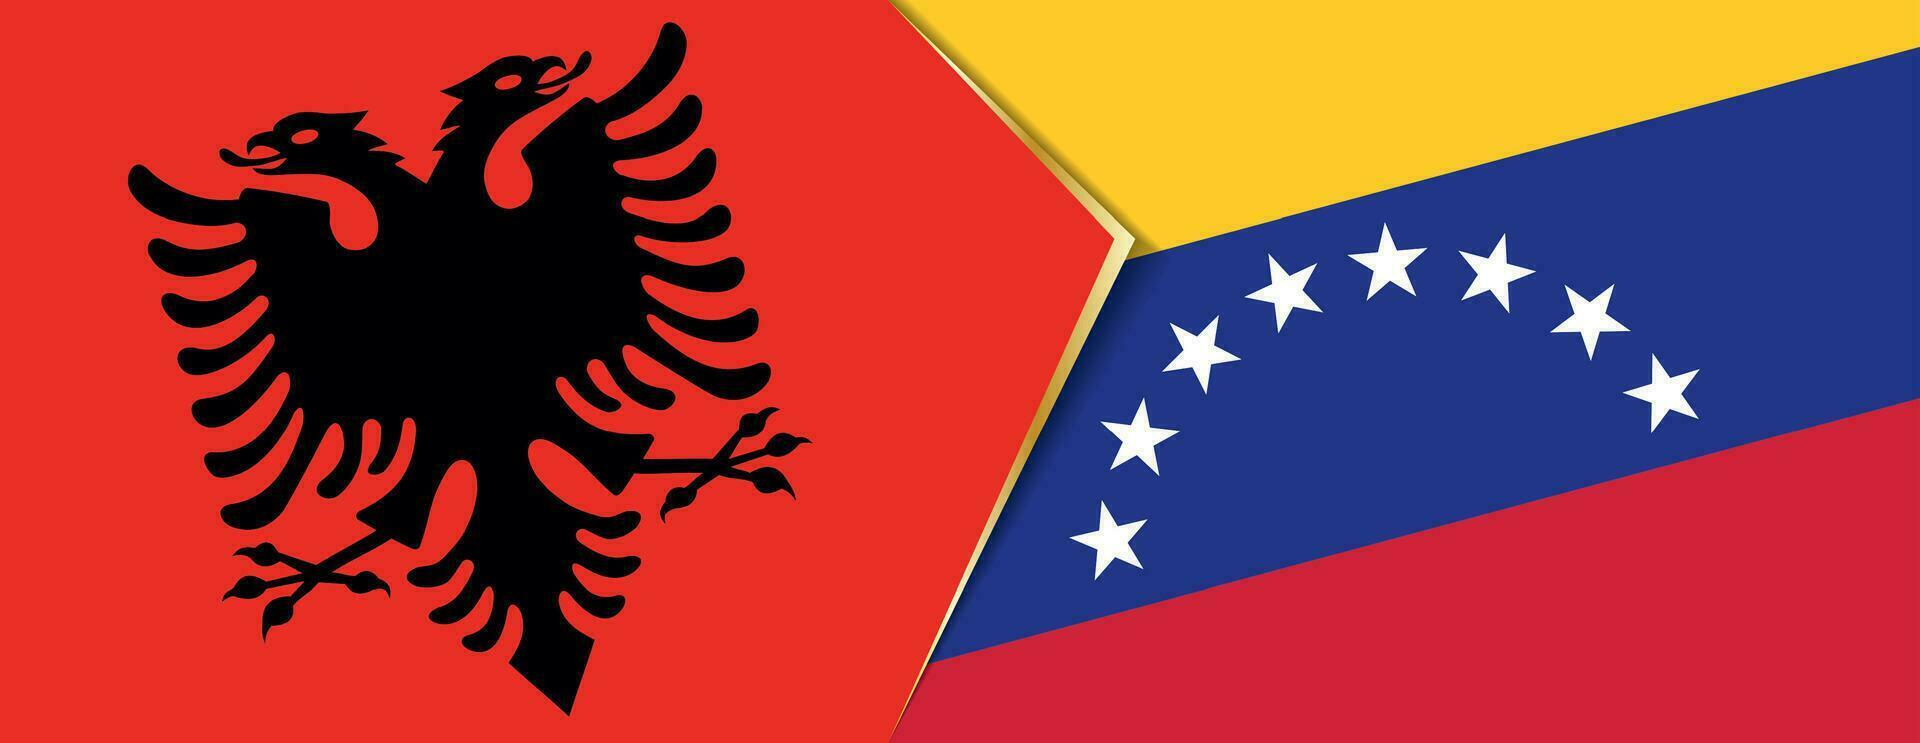 albania och venezuela flaggor, två vektor flaggor.